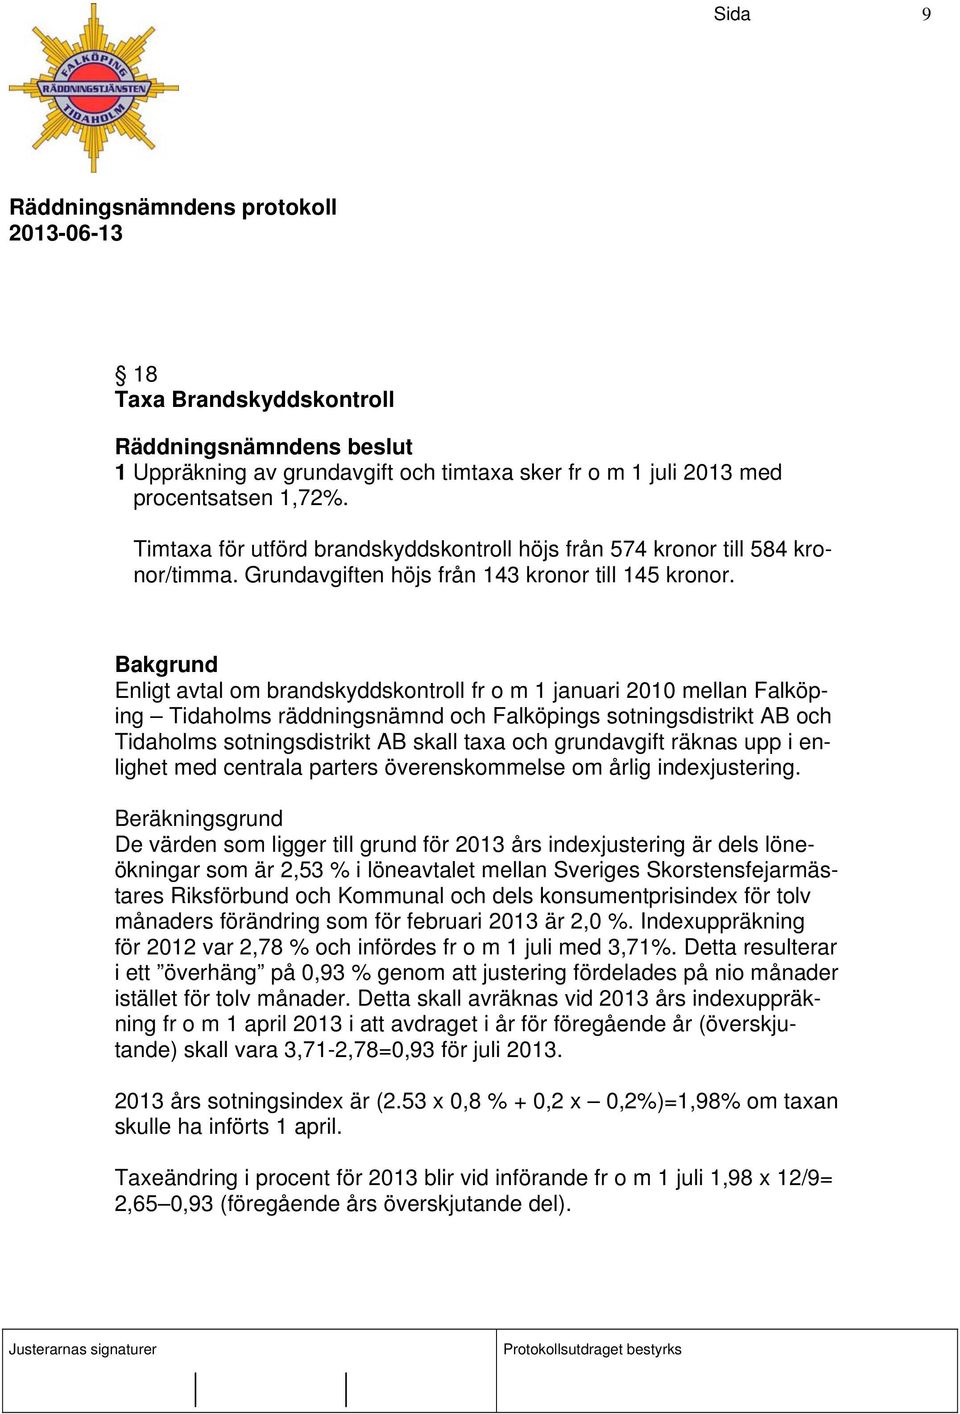 Enligt avtal om brandskyddskontroll fr o m 1 januari 2010 mellan Falköping Tidaholms räddningsnämnd och Falköpings sotningsdistrikt AB och Tidaholms sotningsdistrikt AB skall taxa och grundavgift